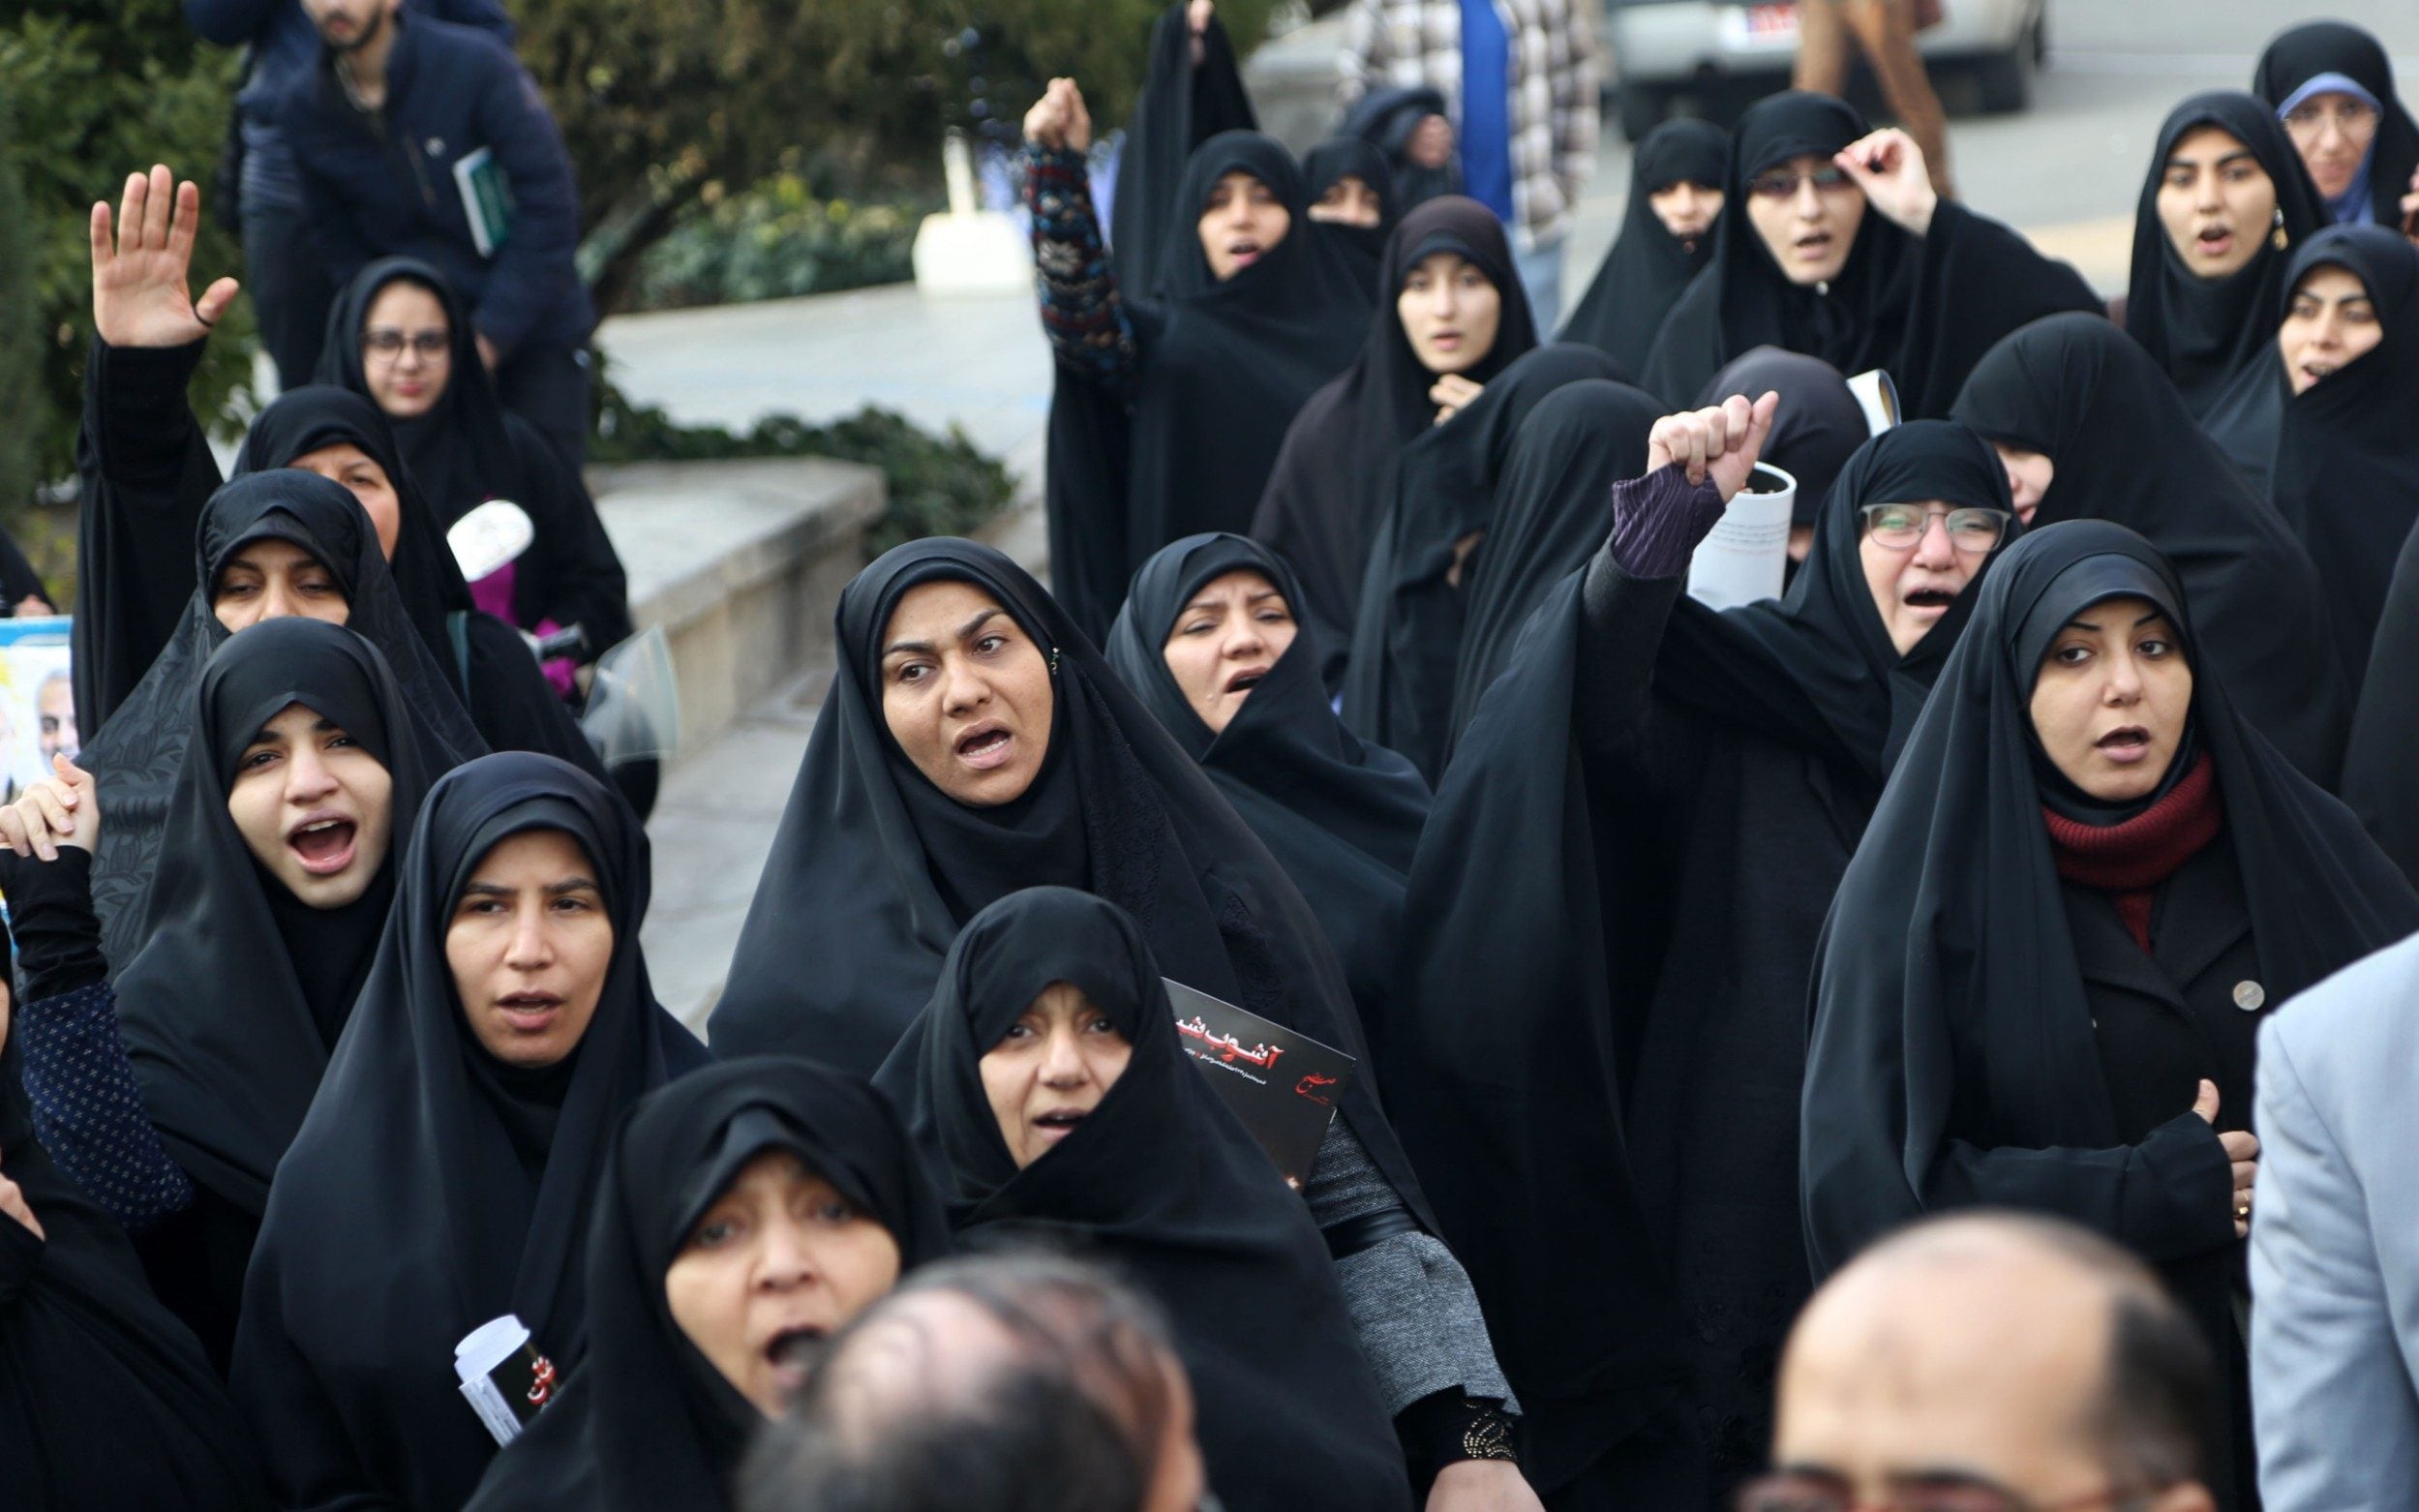 ईरान में कट्टरपंथियों के खिलाफ महिलाओं के गुस्से का लावा फूटा, कांप उठे मजहब के ठेकेदार 